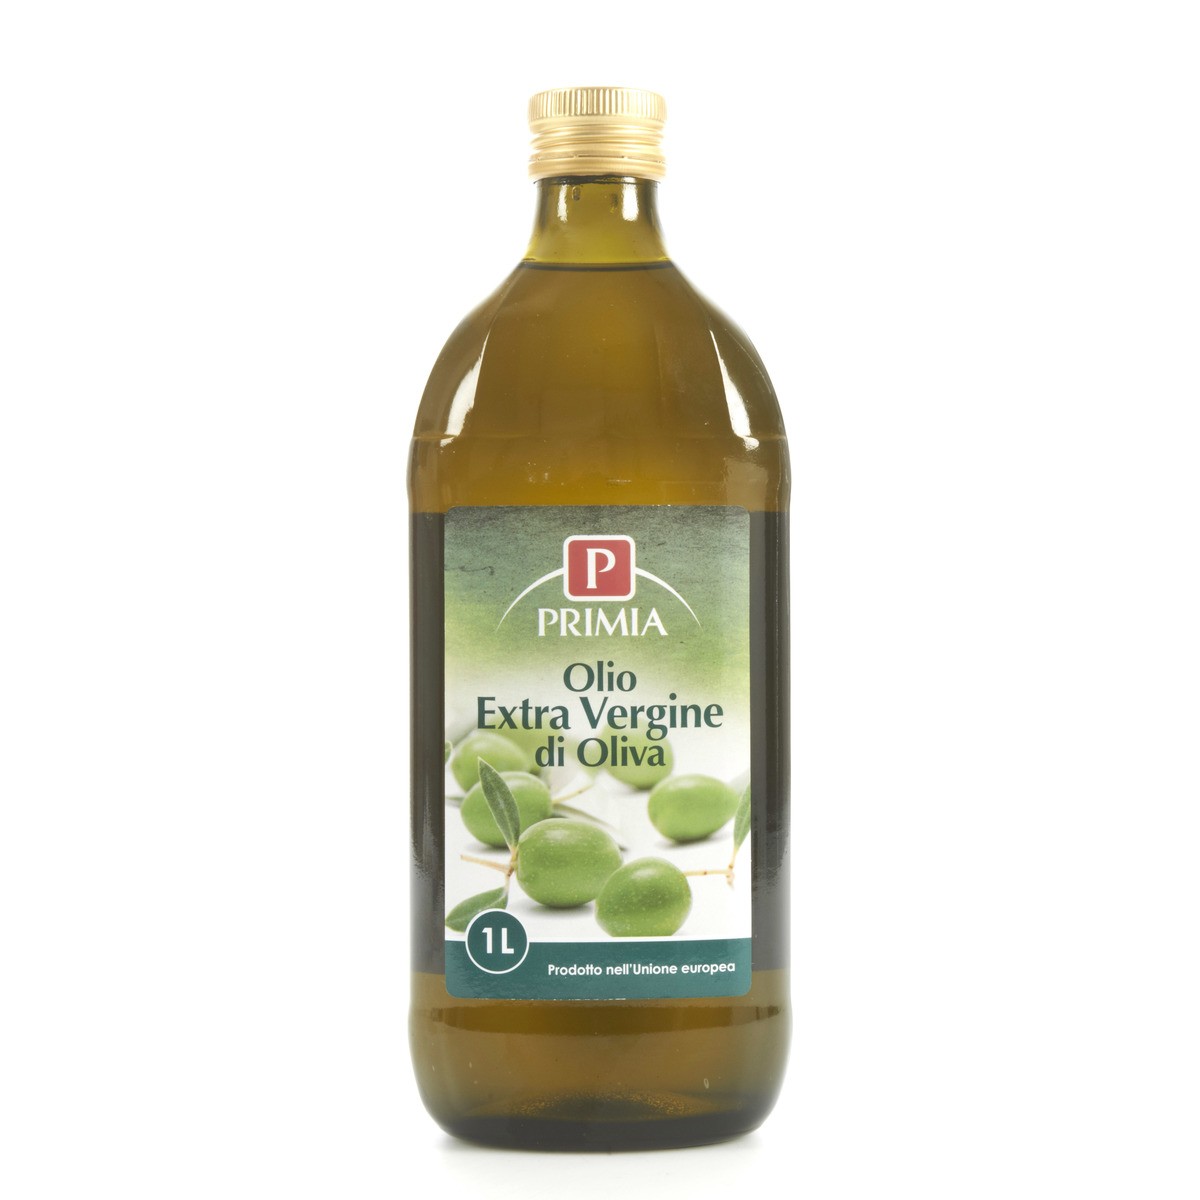 Primia Olio extra vergine di oliva